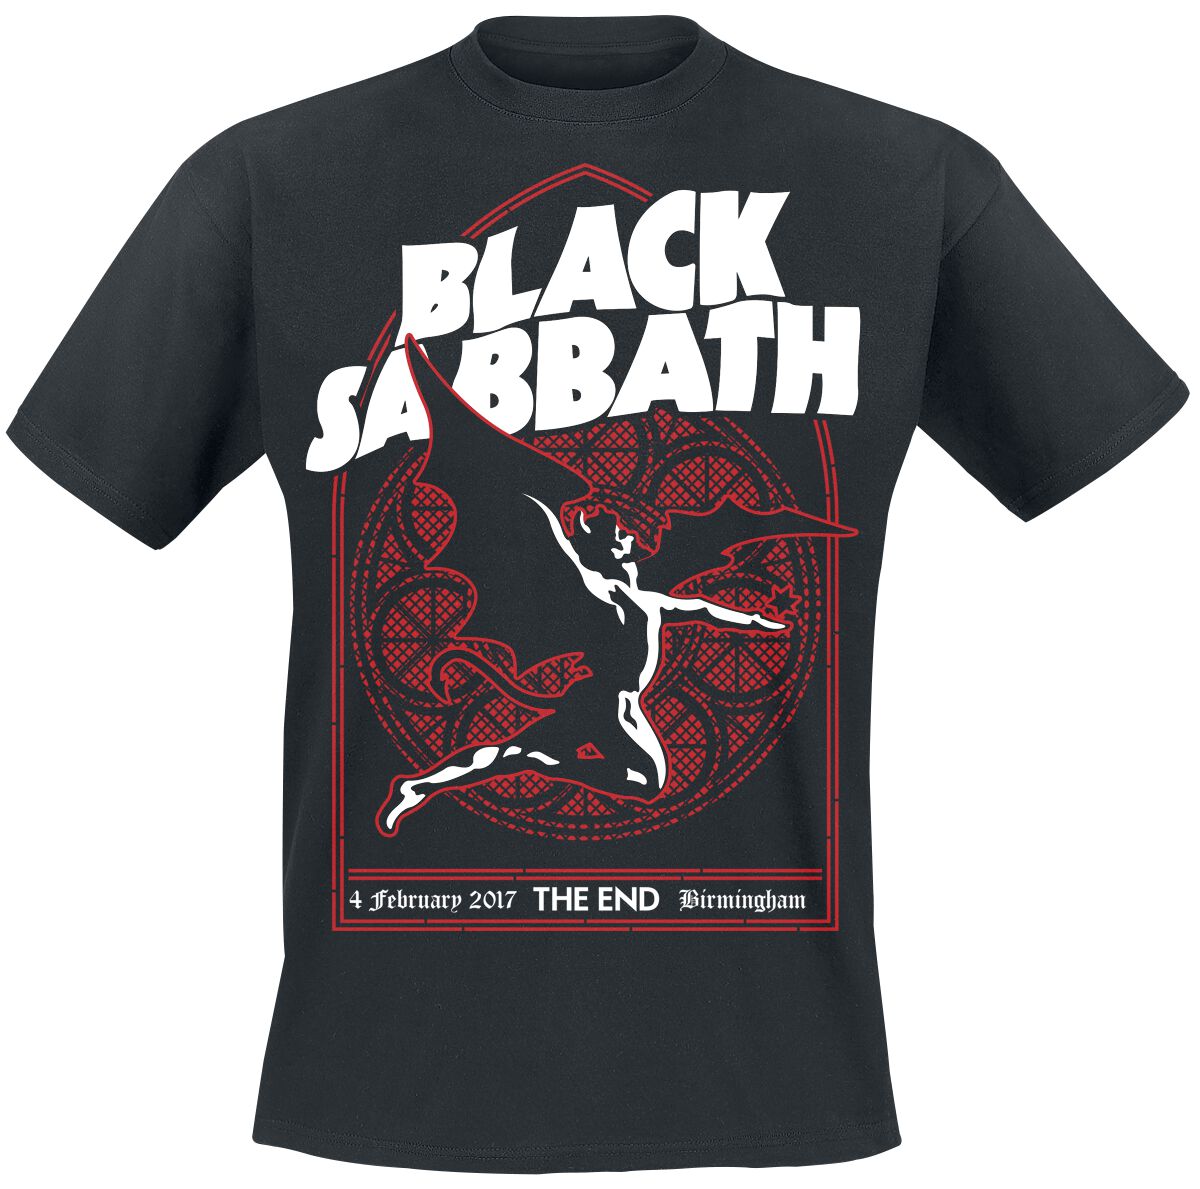 Black Sabbath T-Shirt - The End Church Window - M bis XXL - für Männer - Größe L - schwarz  - Lizenziertes Merchandise!